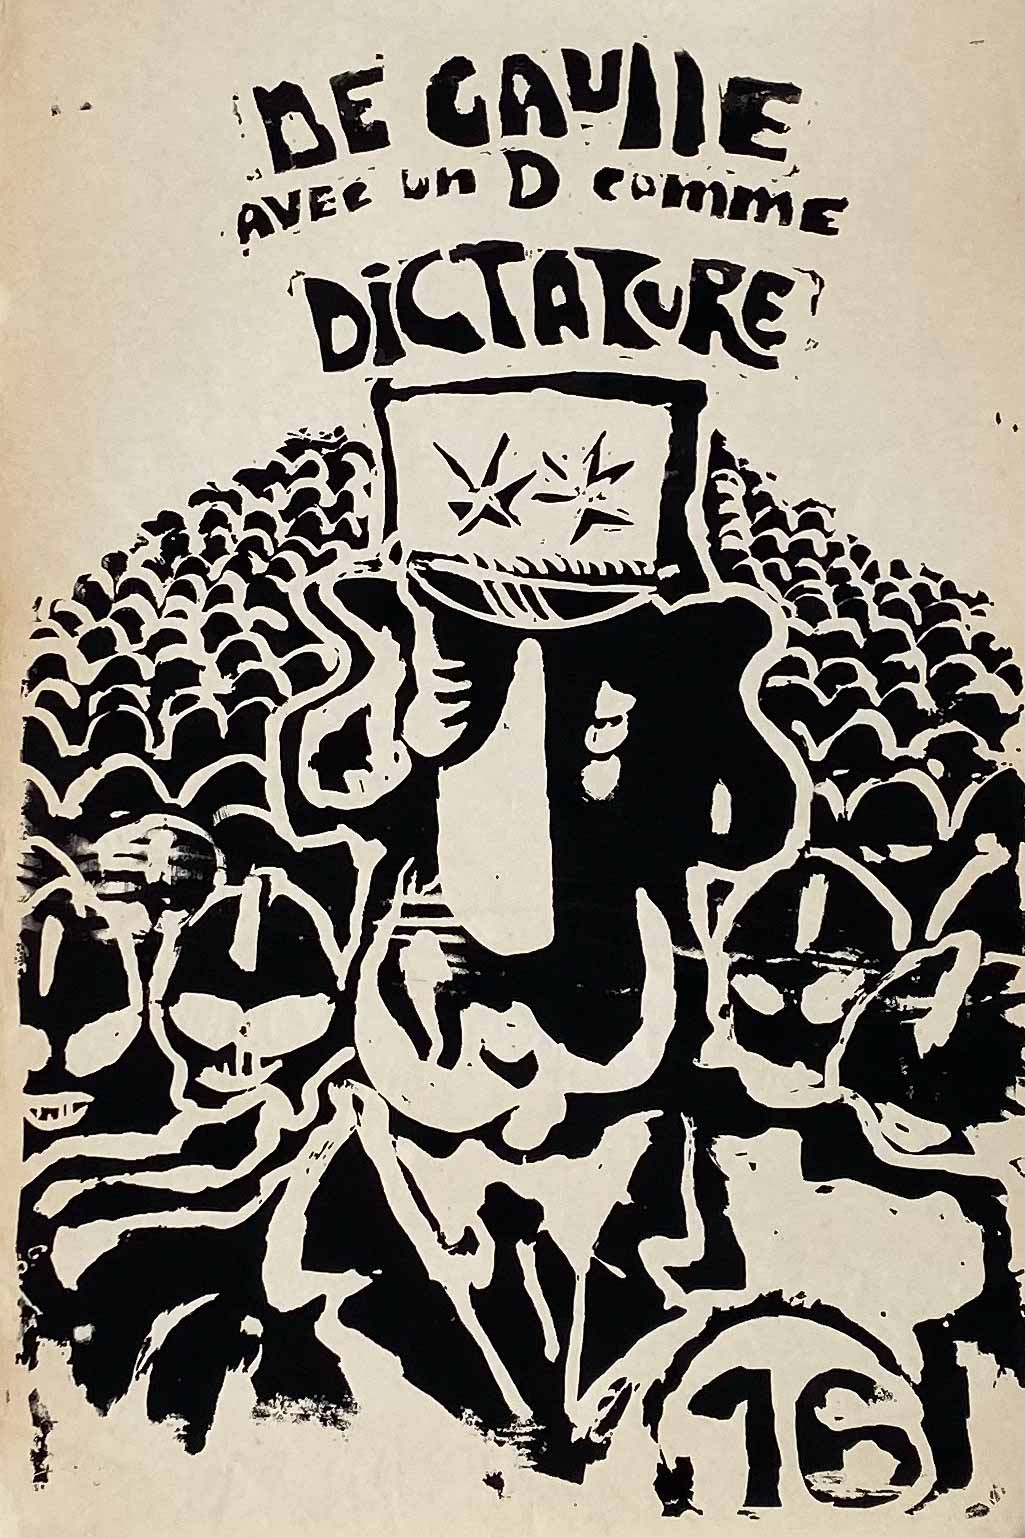 Affiche Mai 68 De Gaulle avec un D comme dictature